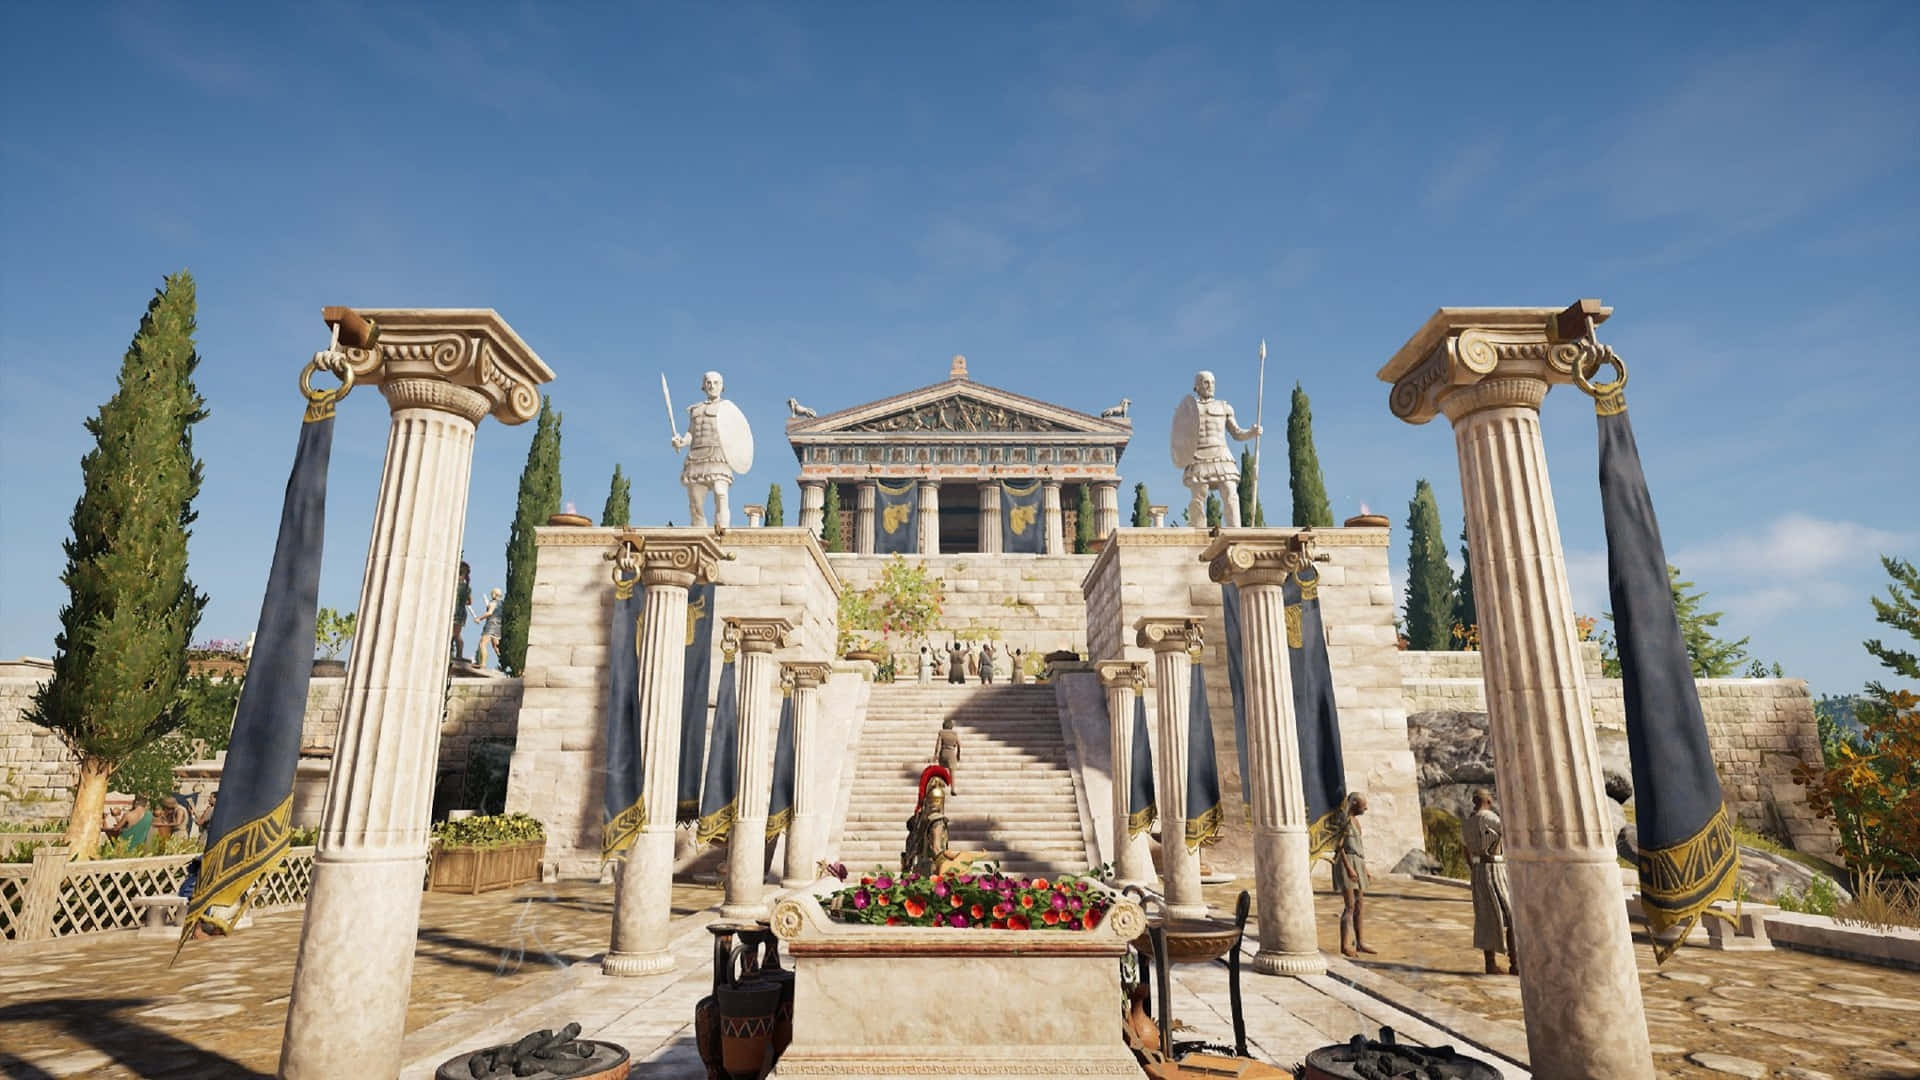 1920x1080bakgrundsbild Från Assassin's Creed Odyssey Athens.